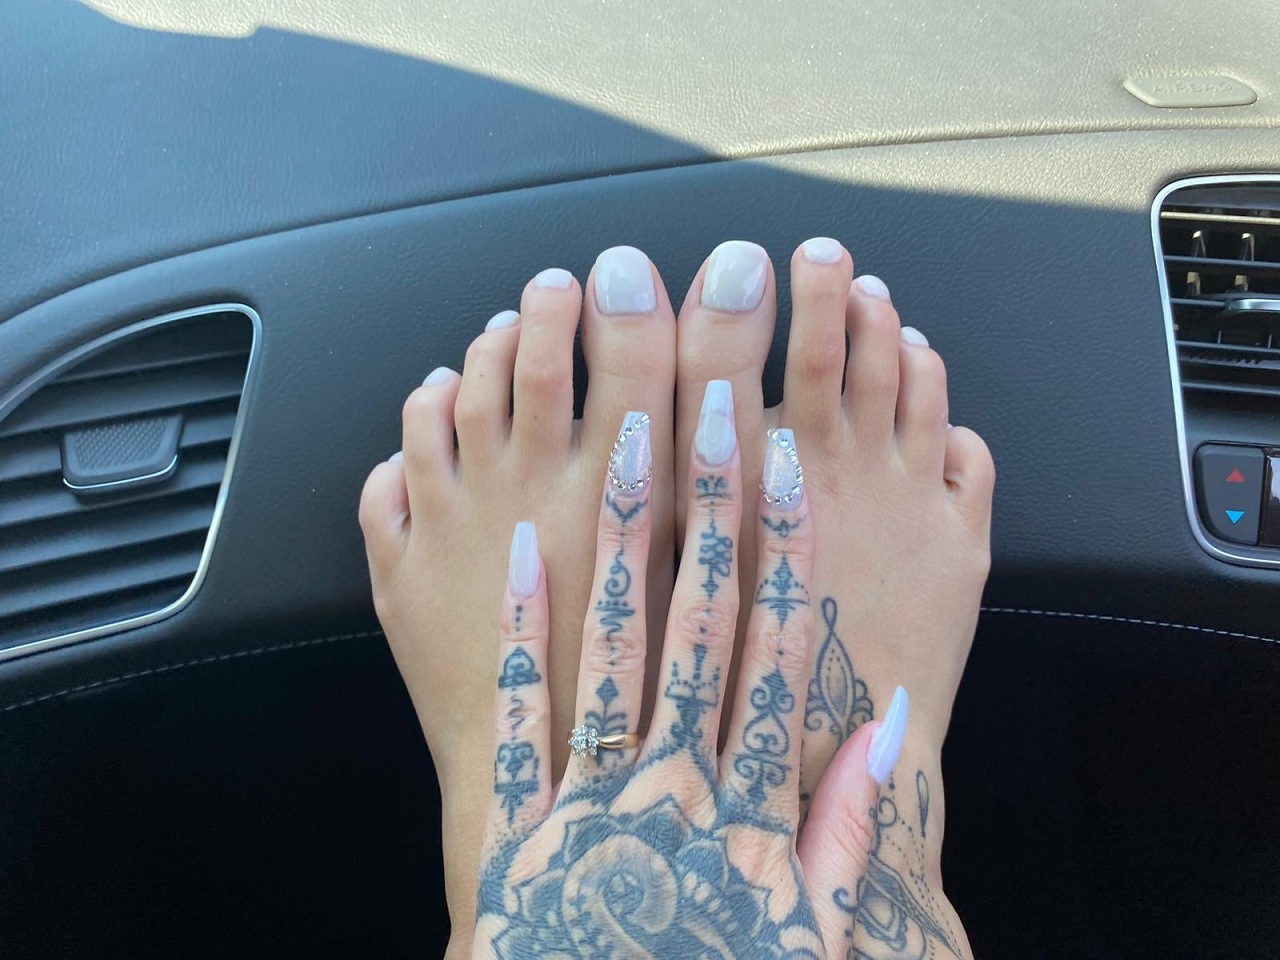 Marley Brinx Feet